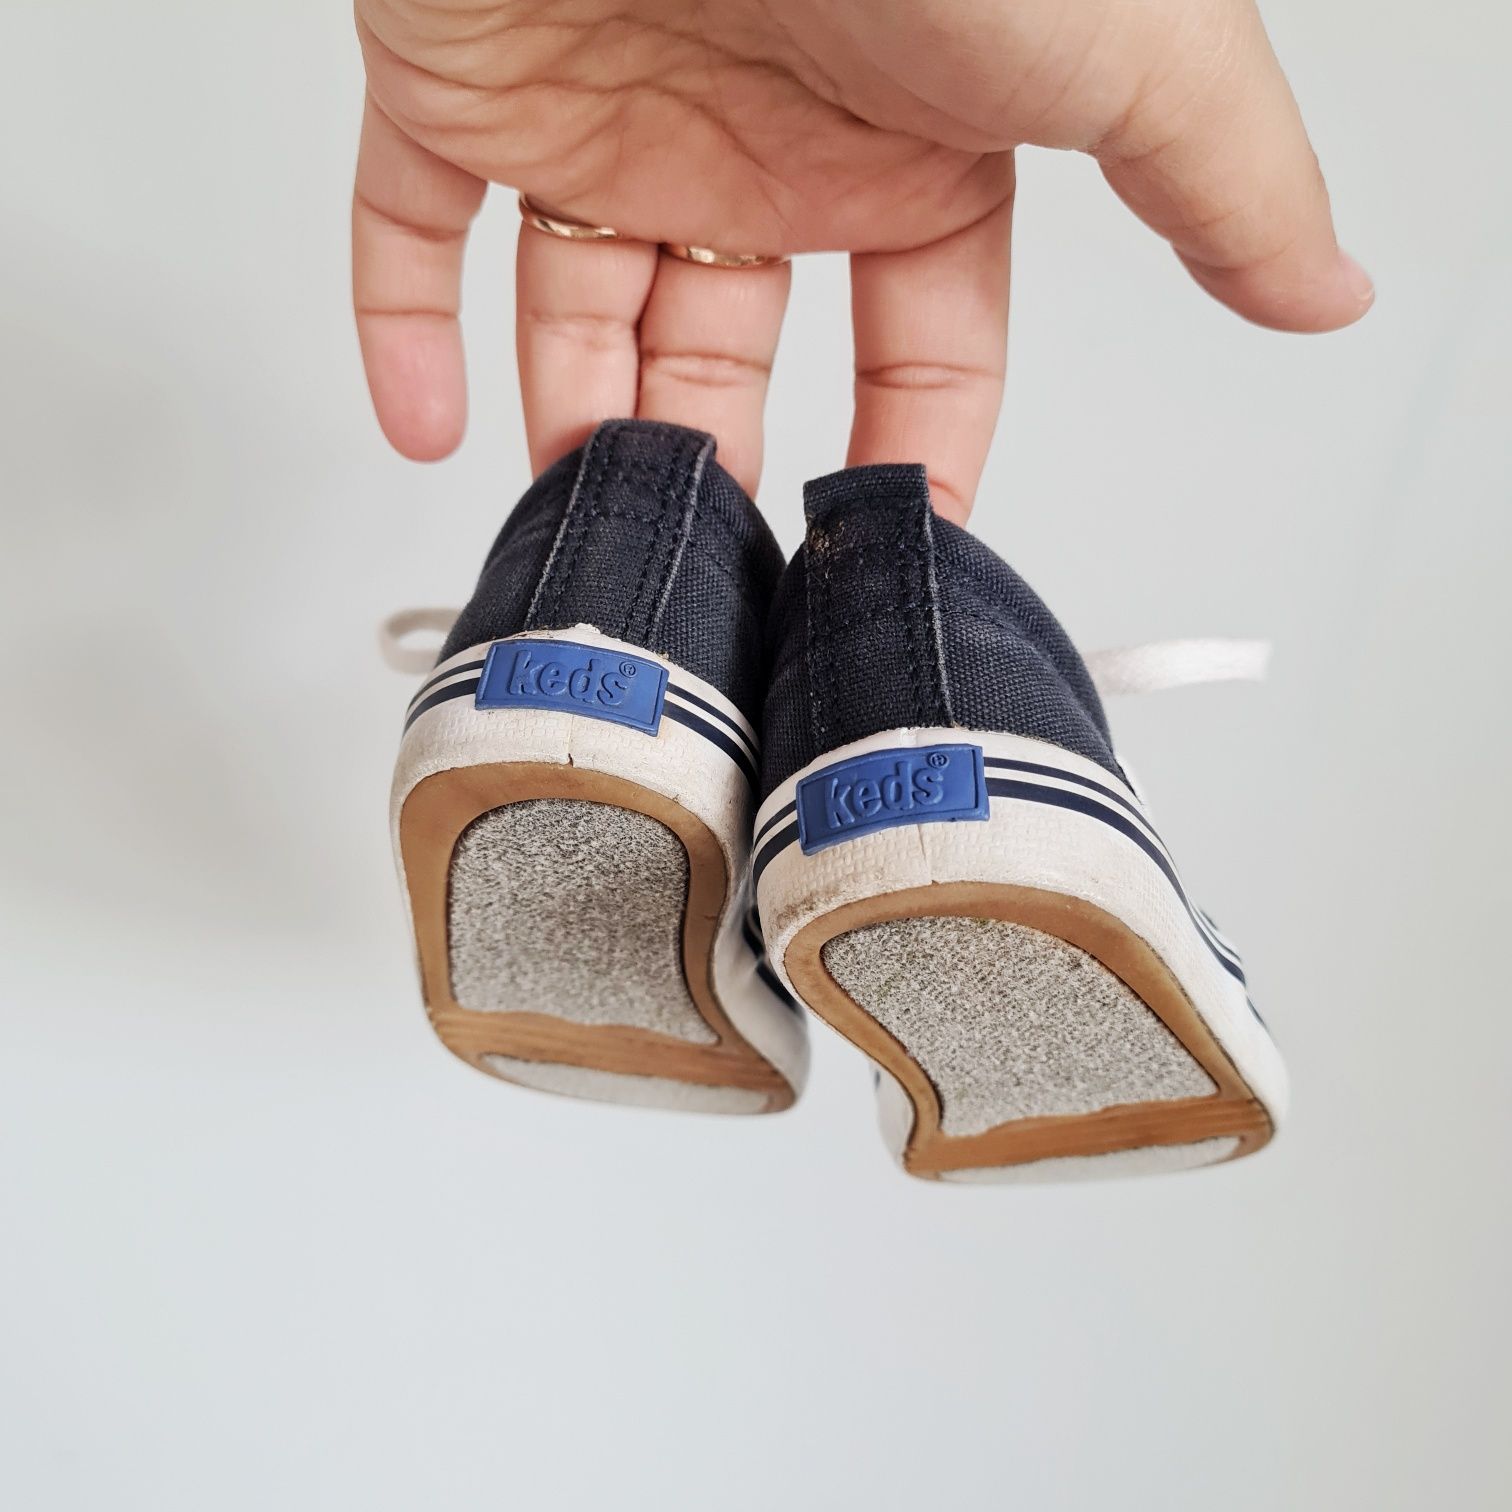 Granatowe trampki buty dziecięce keds 21 buciki dla dziecka 

Świetne